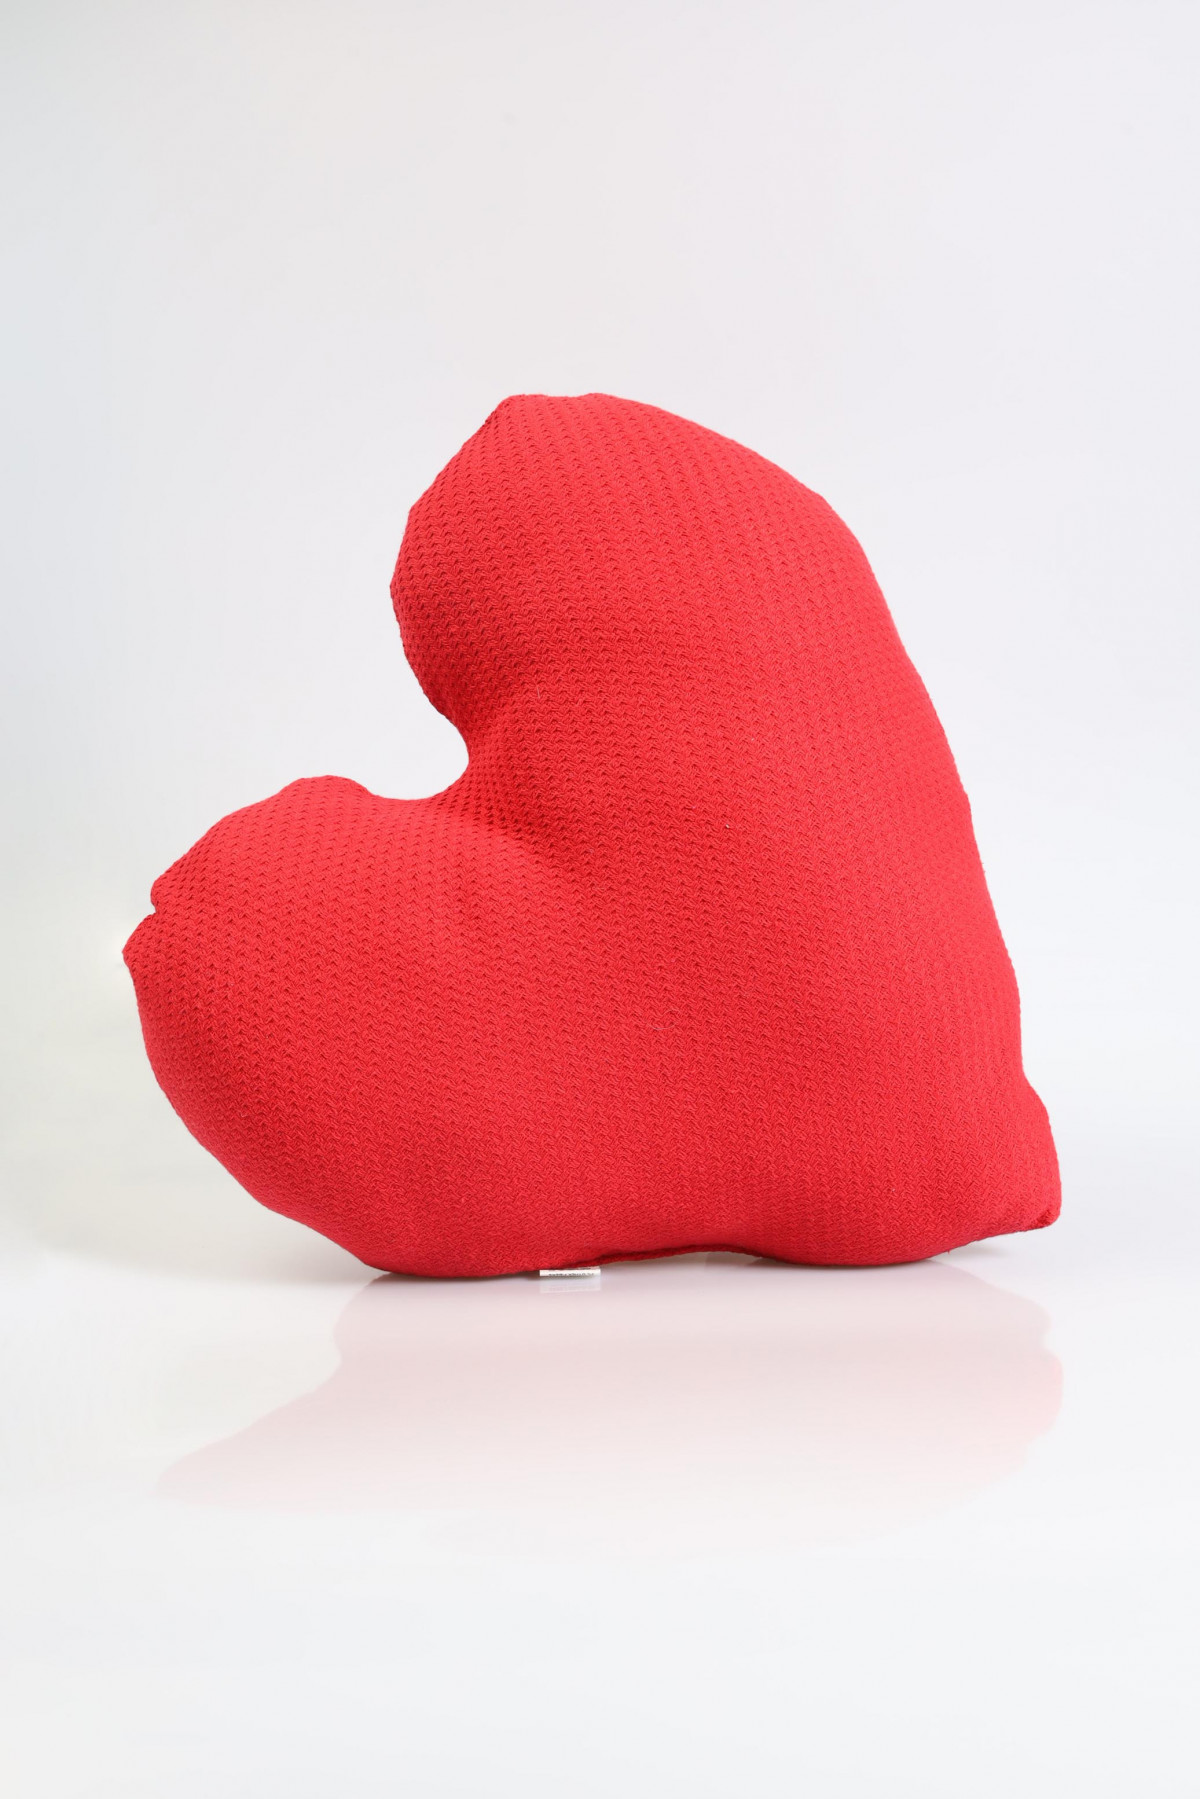 Heart pillow